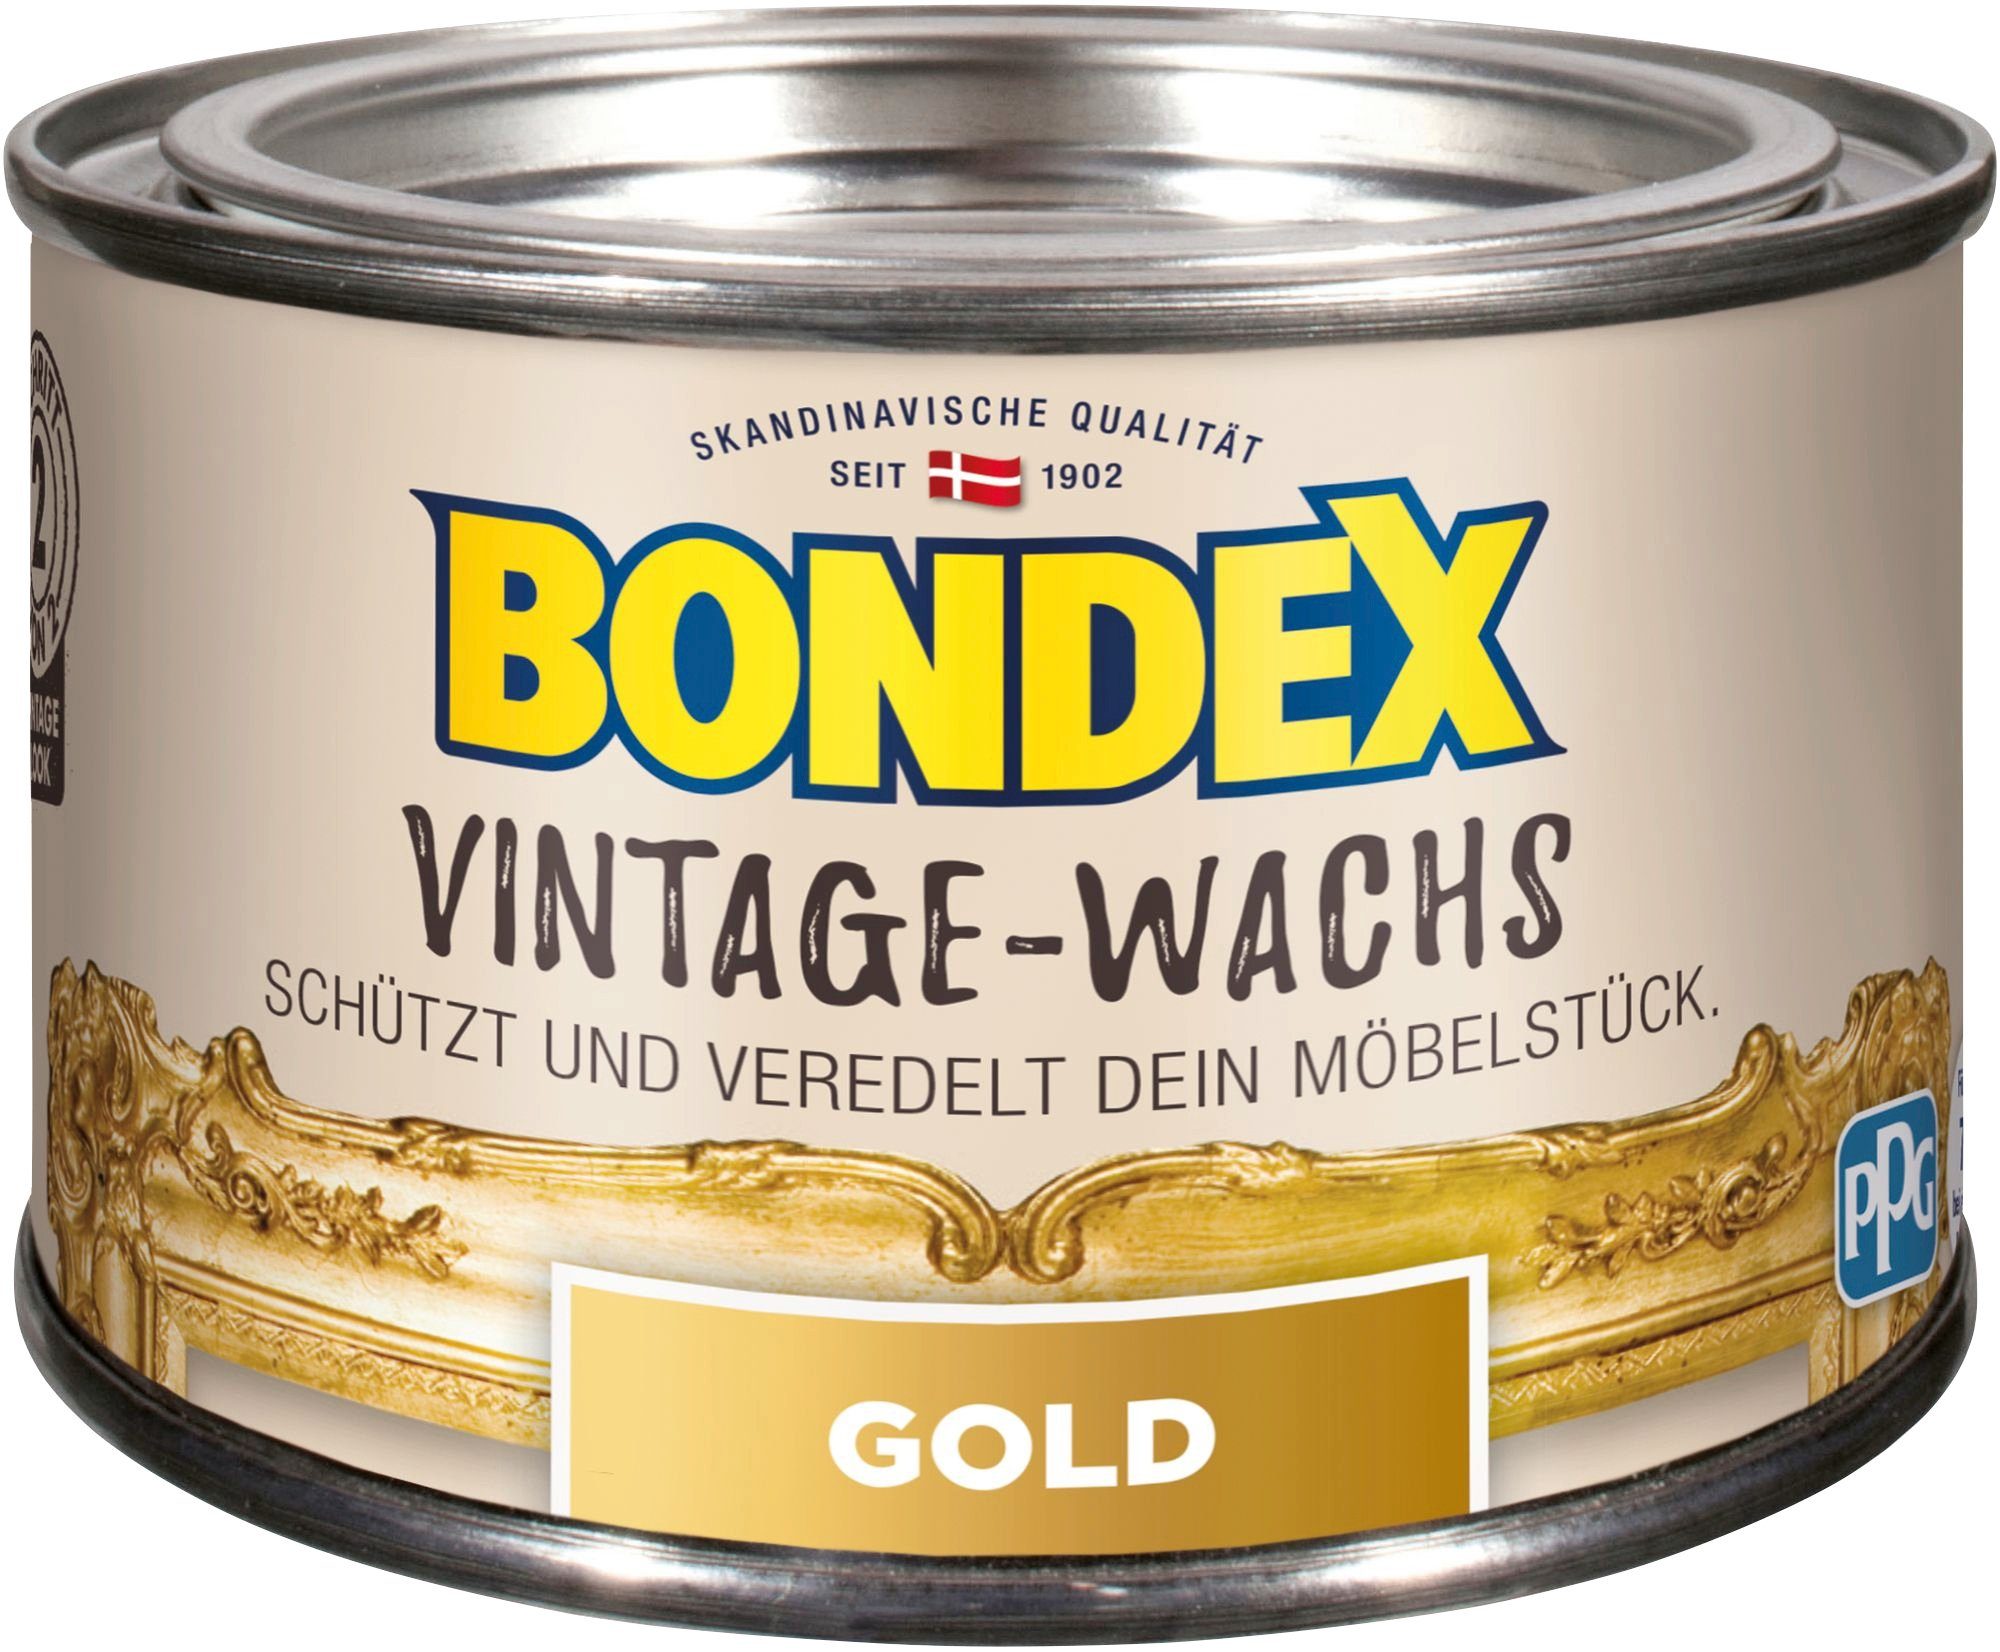 Bondex VINTAGE-WACHS Grau Schutzwachs, zum Schutz und Veredelung der Möbelstücke, 0,25 l goldfarben